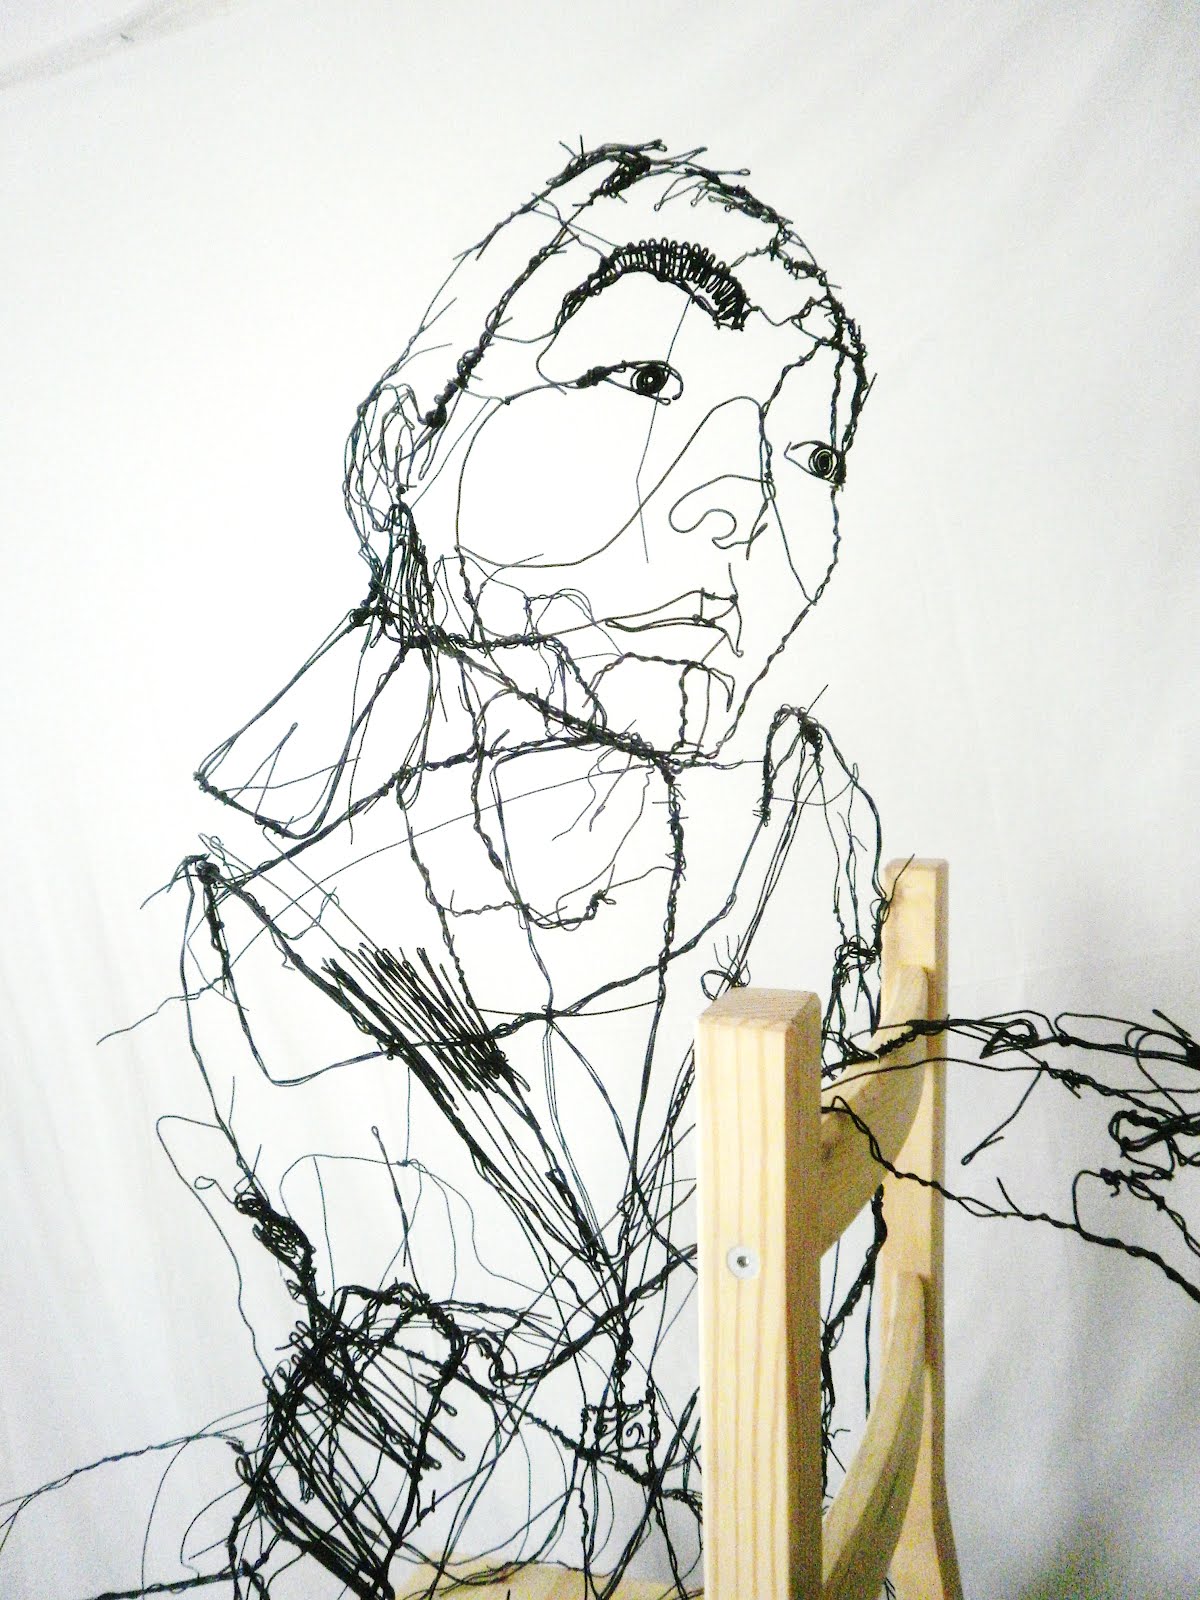 Давид Оливейра (David Oliveira) - современный португальский художник. Современное искусство Португалии. Скульптура из проволоки